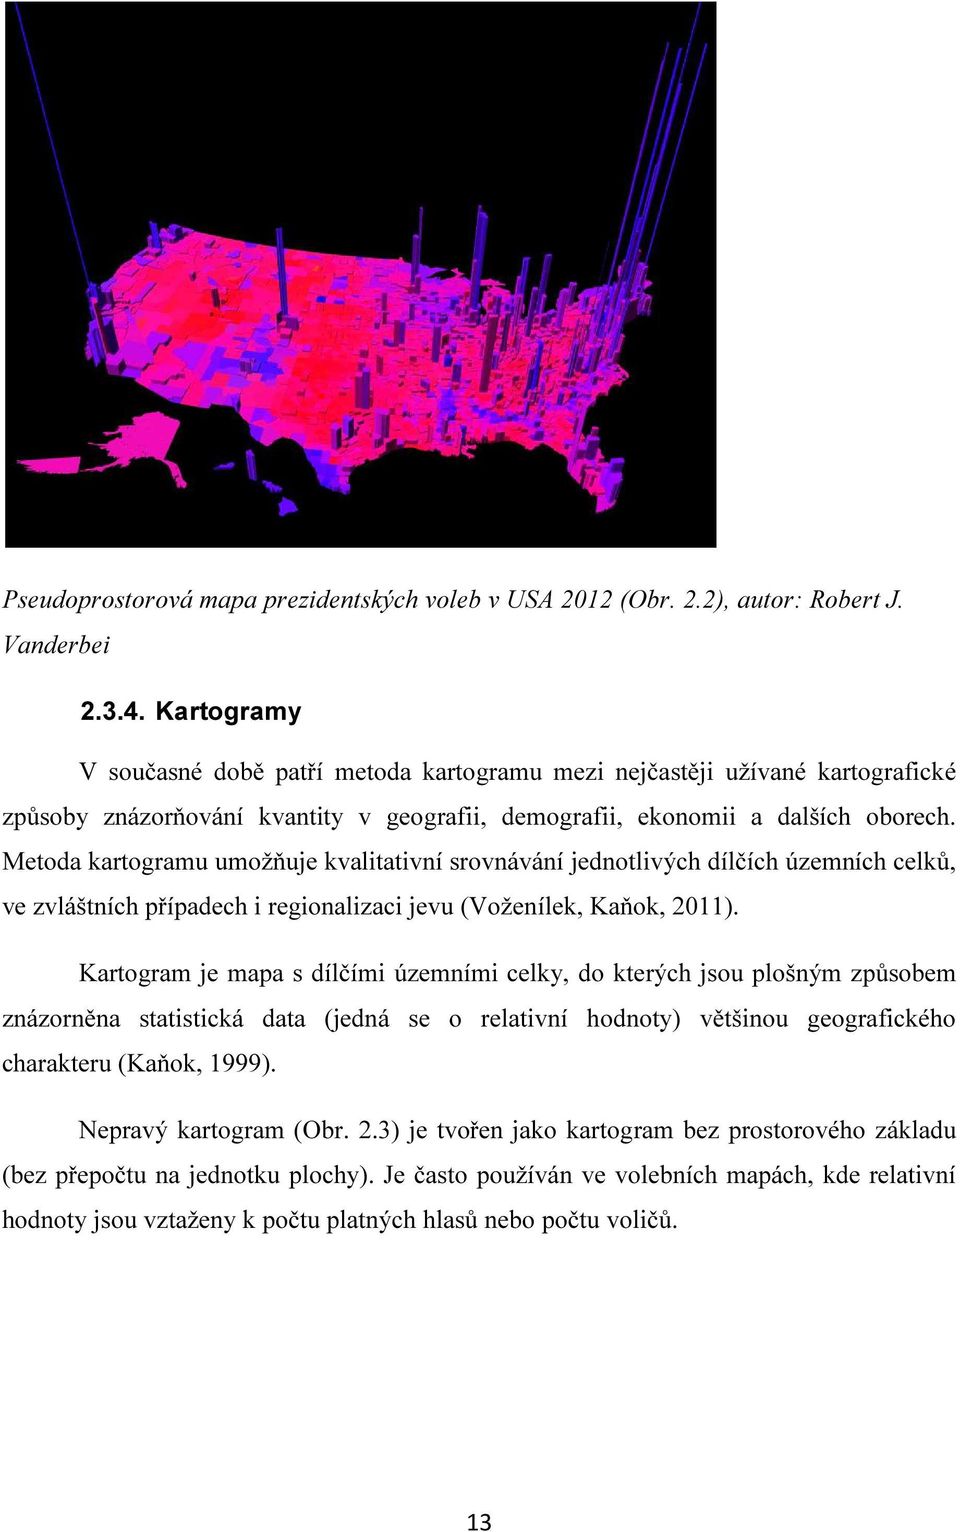 Metoda kartogramu umožňuje kvalitativní srovnávání jednotlivých dílčích územních celků, ve zvláštních případech i regionalizaci jevu (Voženílek, Kaňok, 2011).